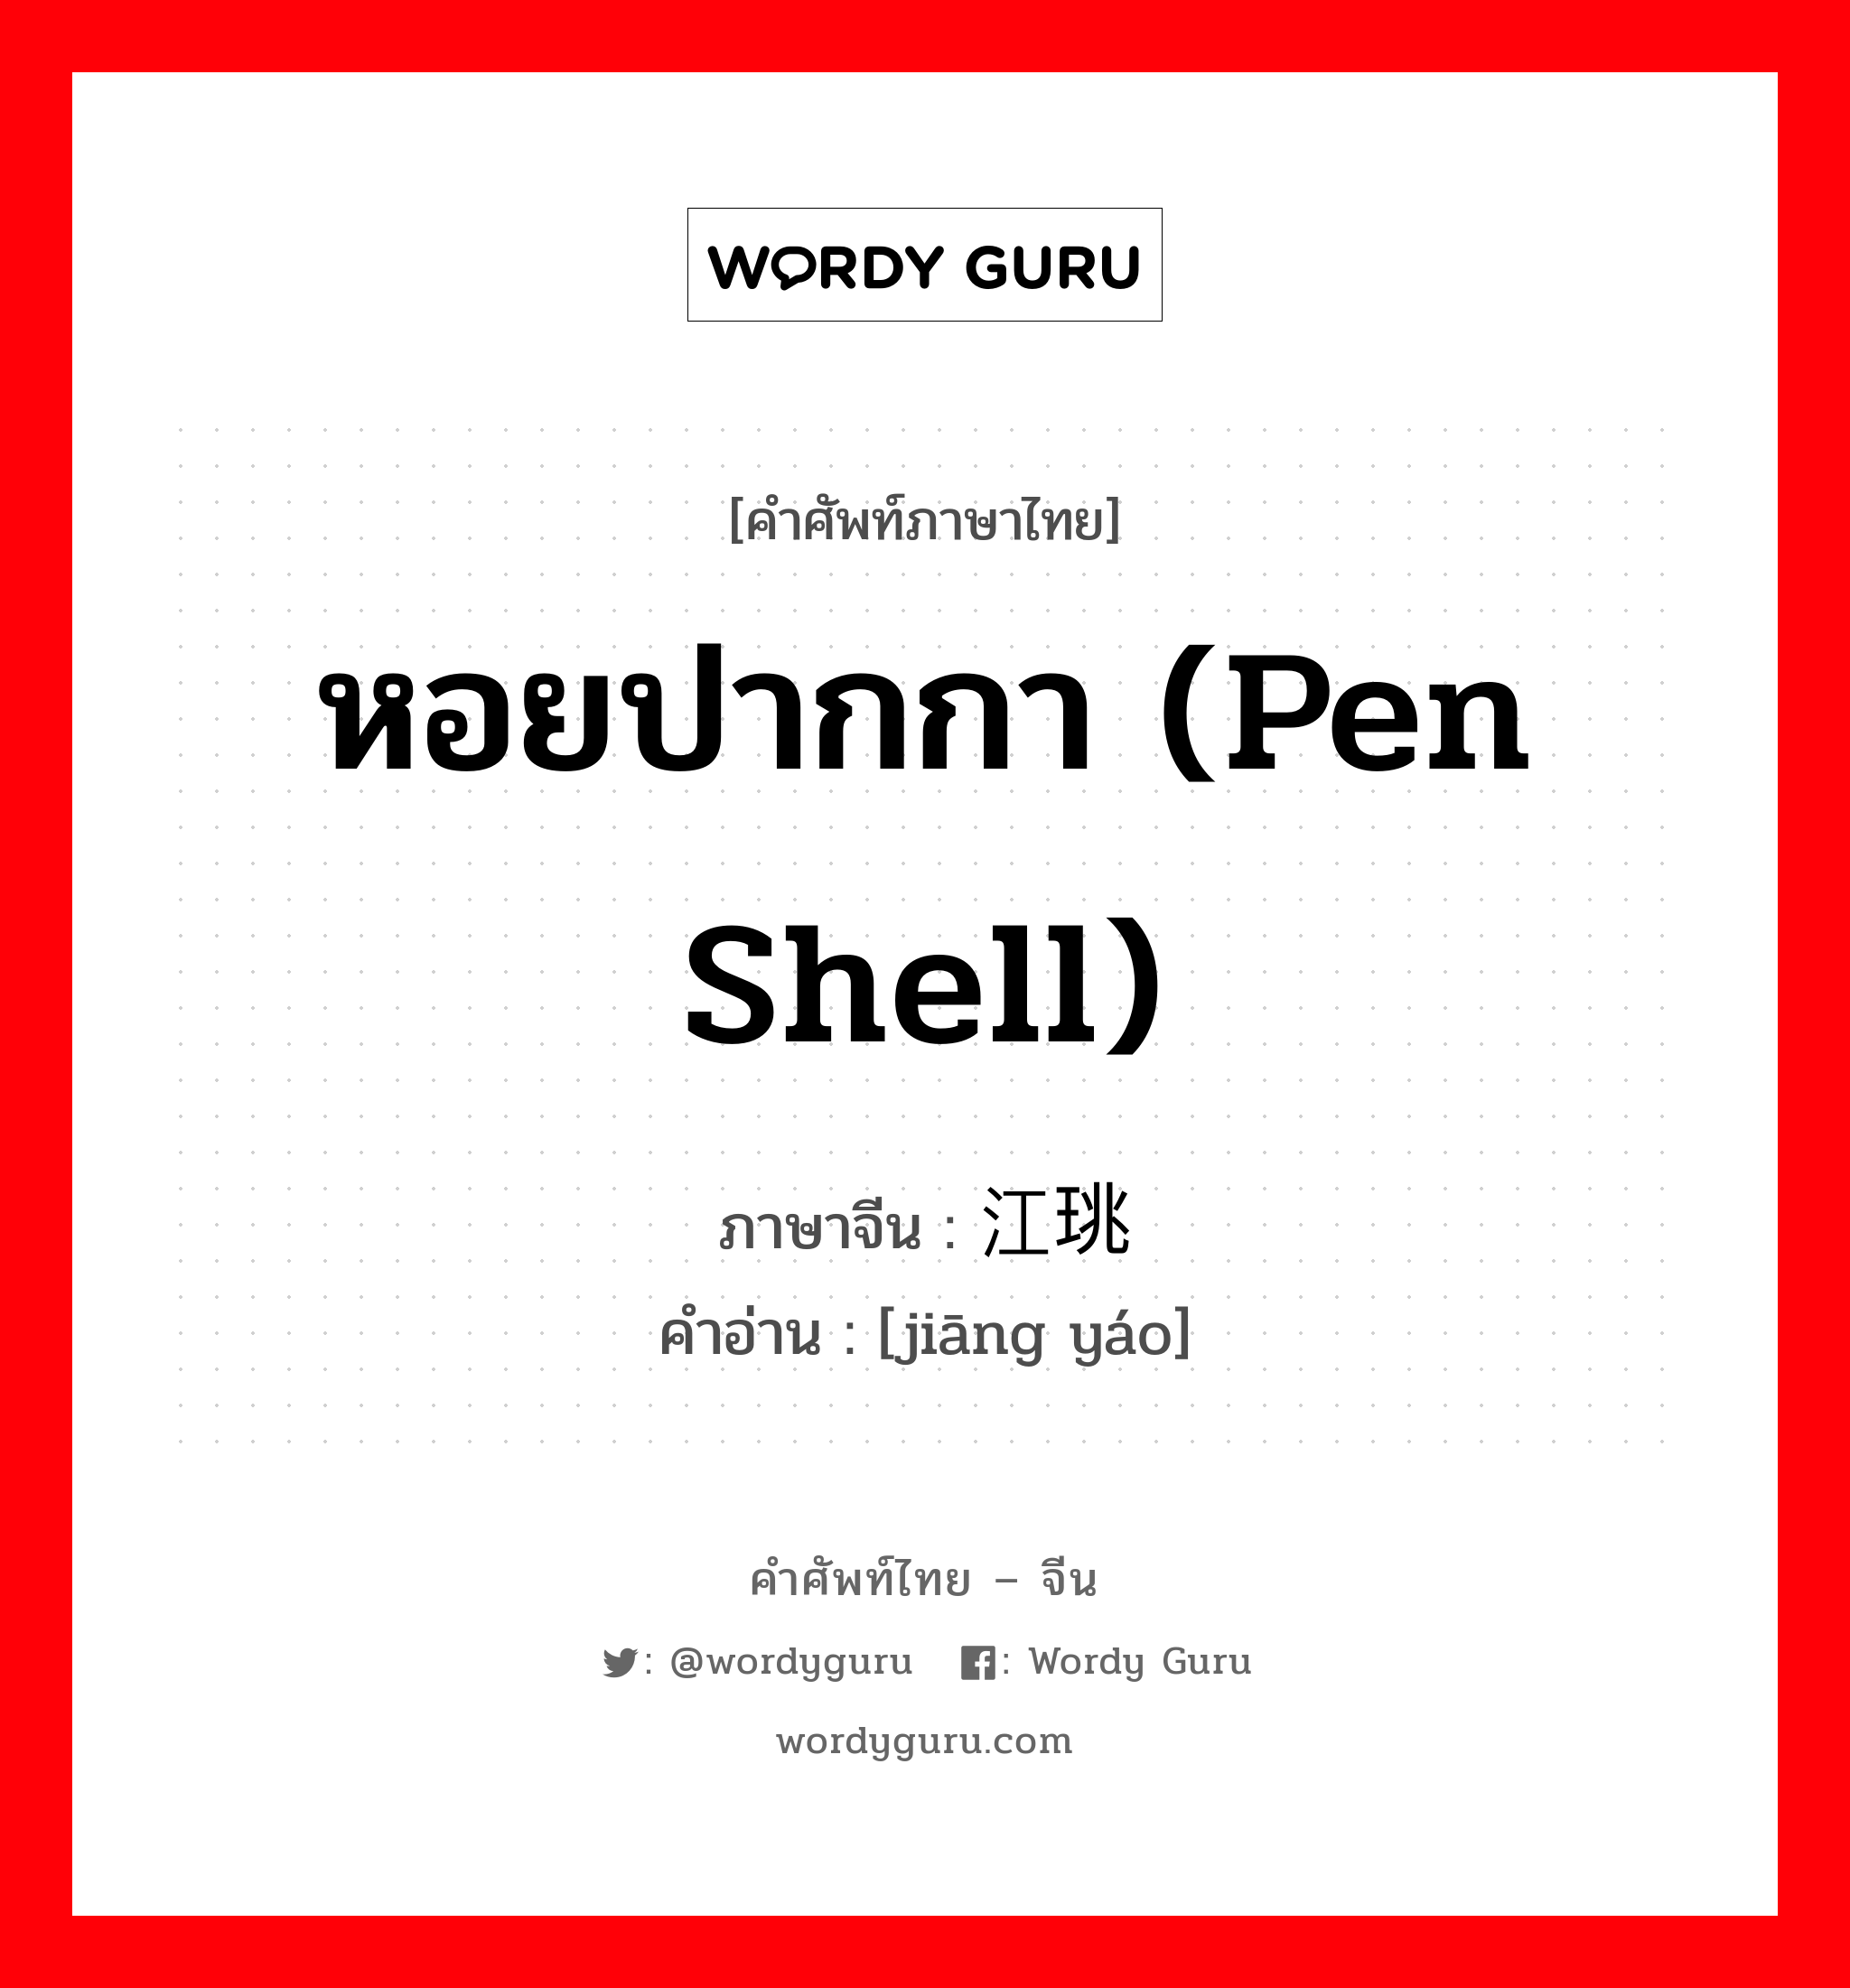 หอยปากกา (pen shell) ภาษาจีนคืออะไร, คำศัพท์ภาษาไทย - จีน หอยปากกา (pen shell) ภาษาจีน 江珧 คำอ่าน [jiāng yáo]